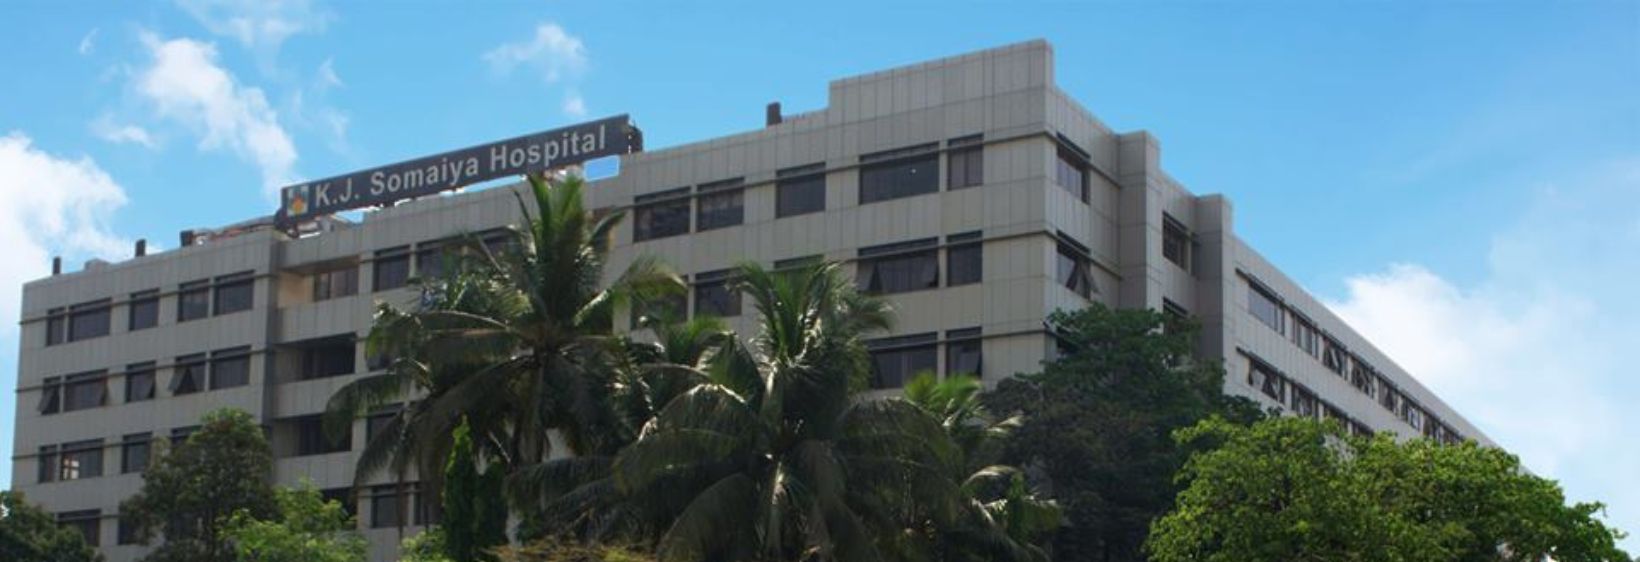 K.J. Somaiya Hospital & Research Centre - Mumbai